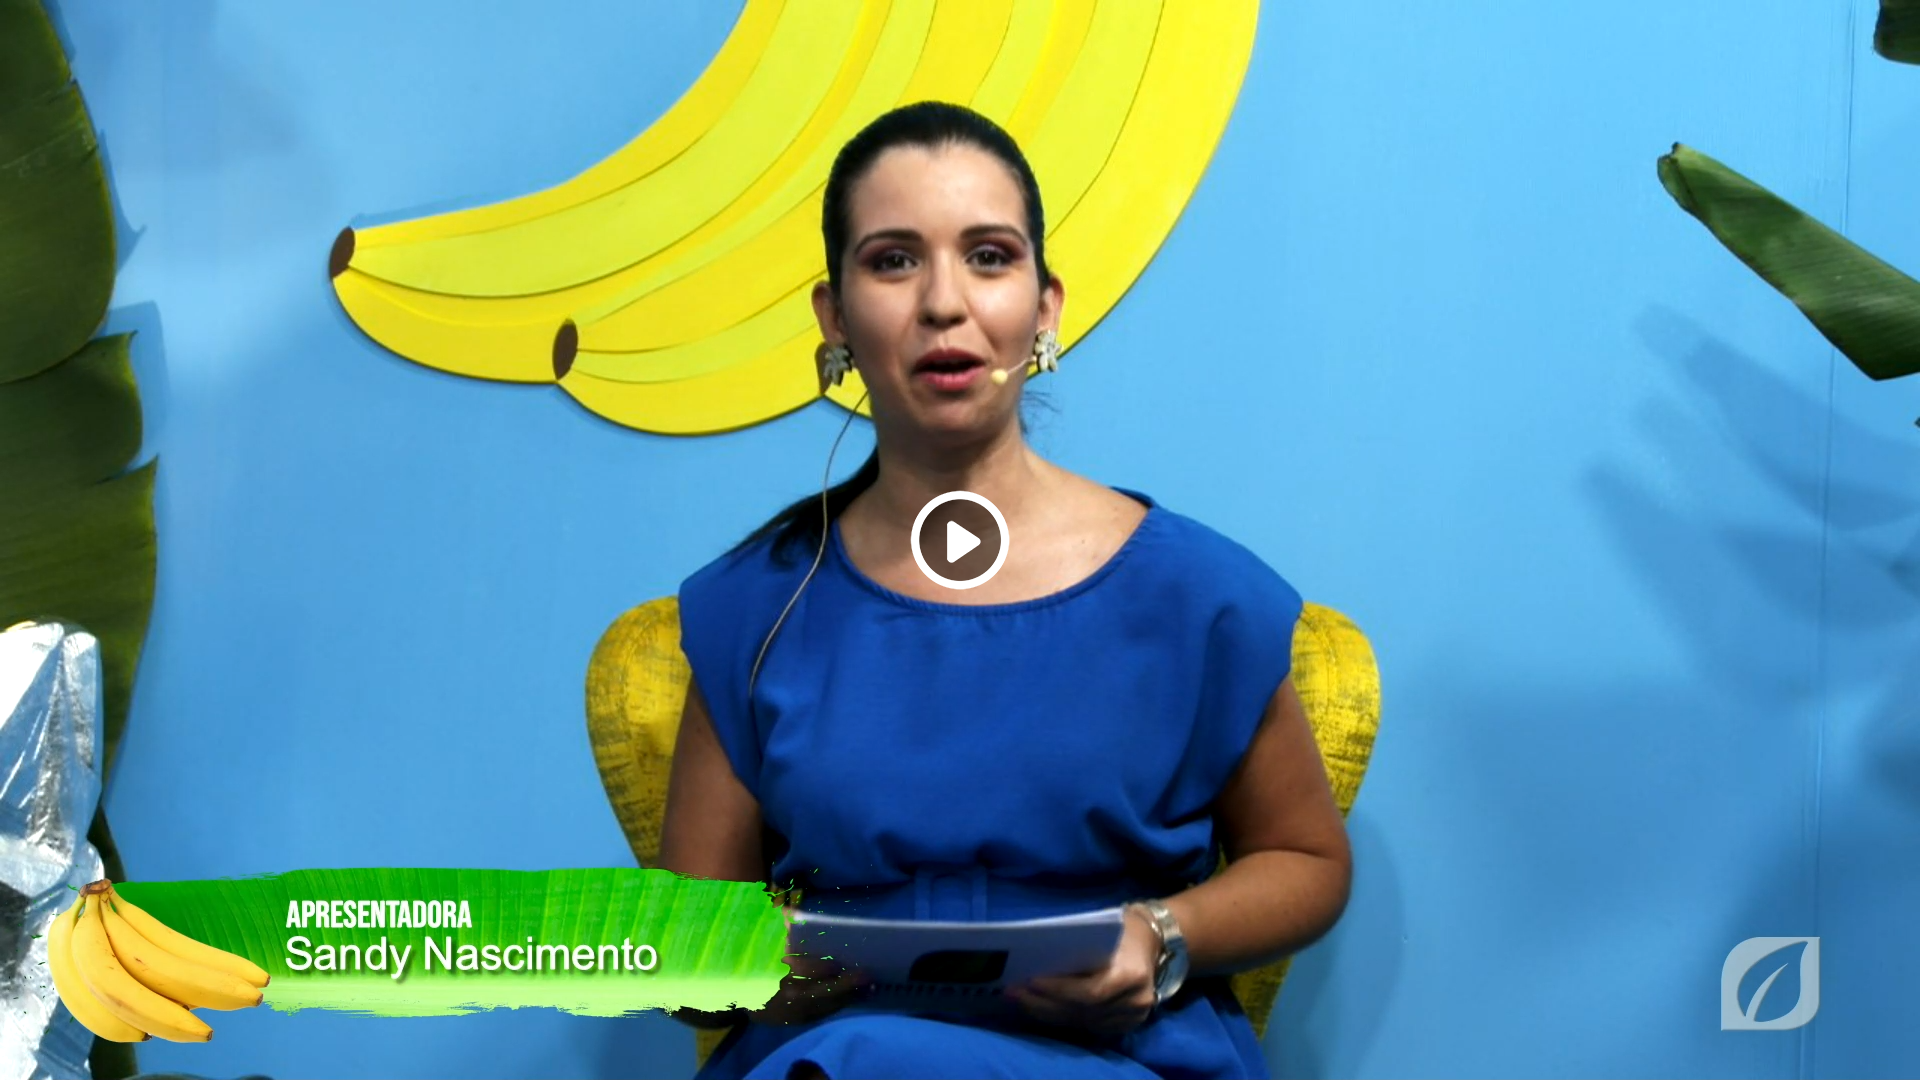 Convosco a apresentadora Sandy Nascimento em mais uma edição especial dos certames do 1º setor – Agricultura e Desenvolvimento Rural - XX Mostra Regional de Banana